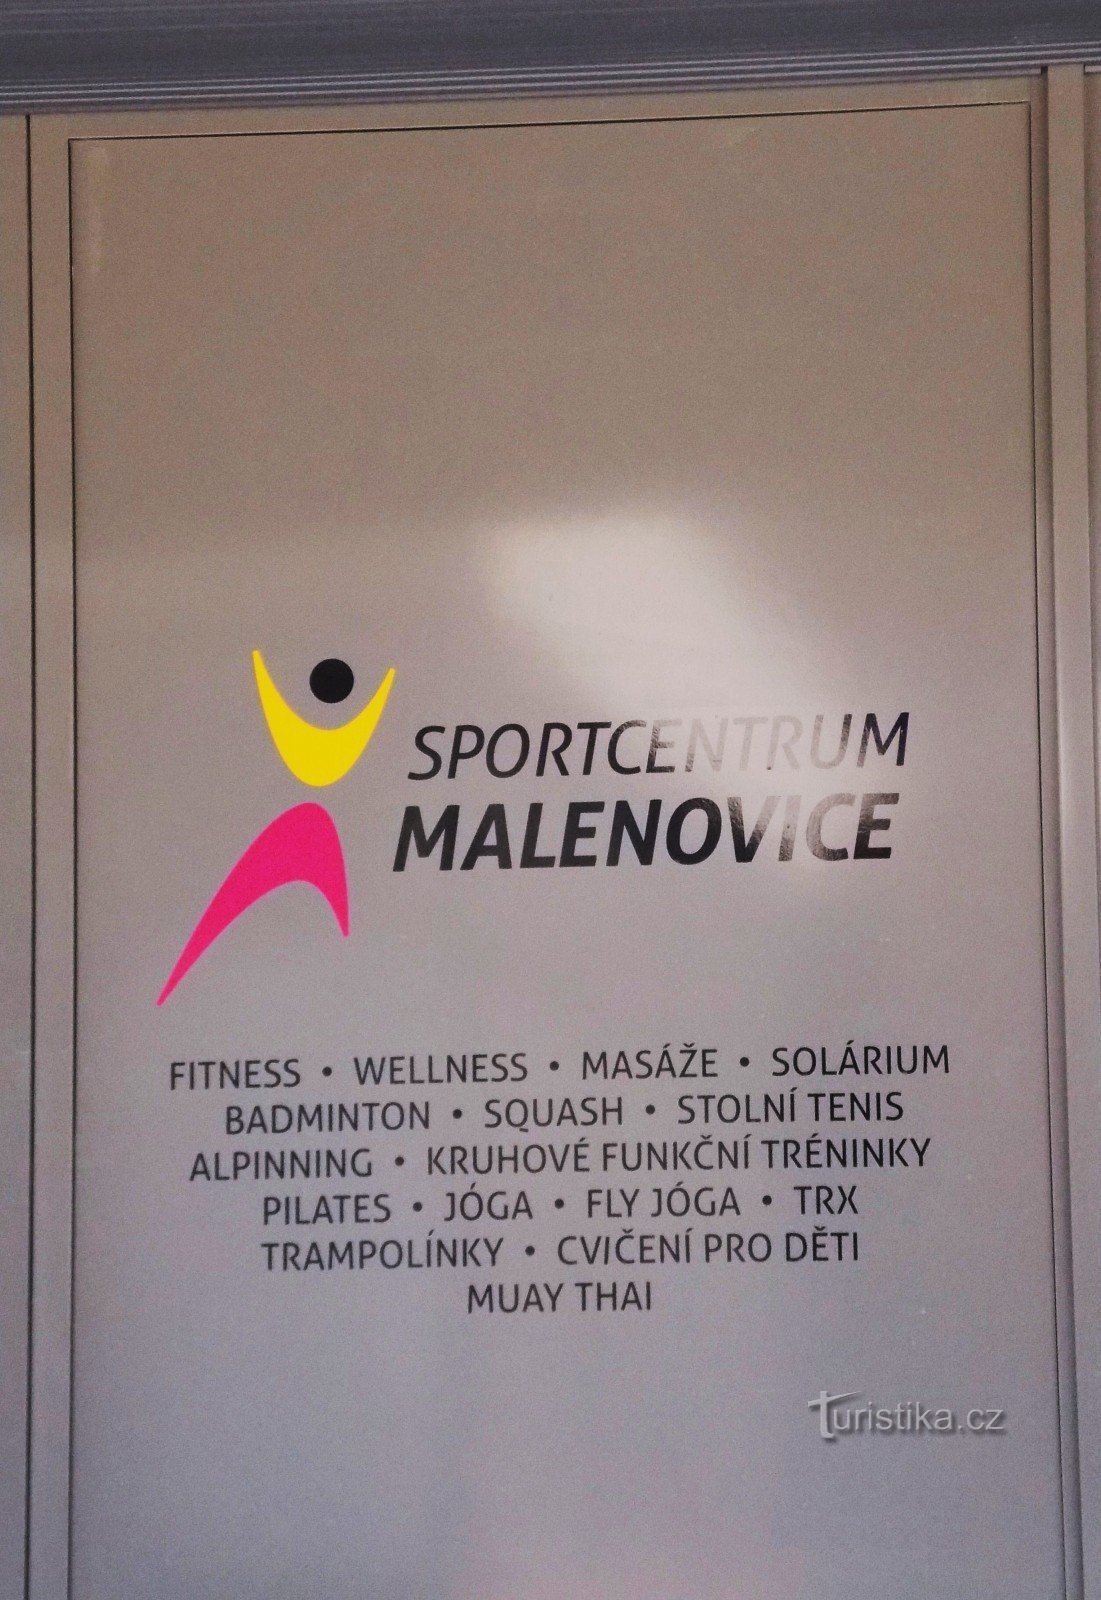 位于兹林附近 Malenovice 的新体育中心设有餐厅